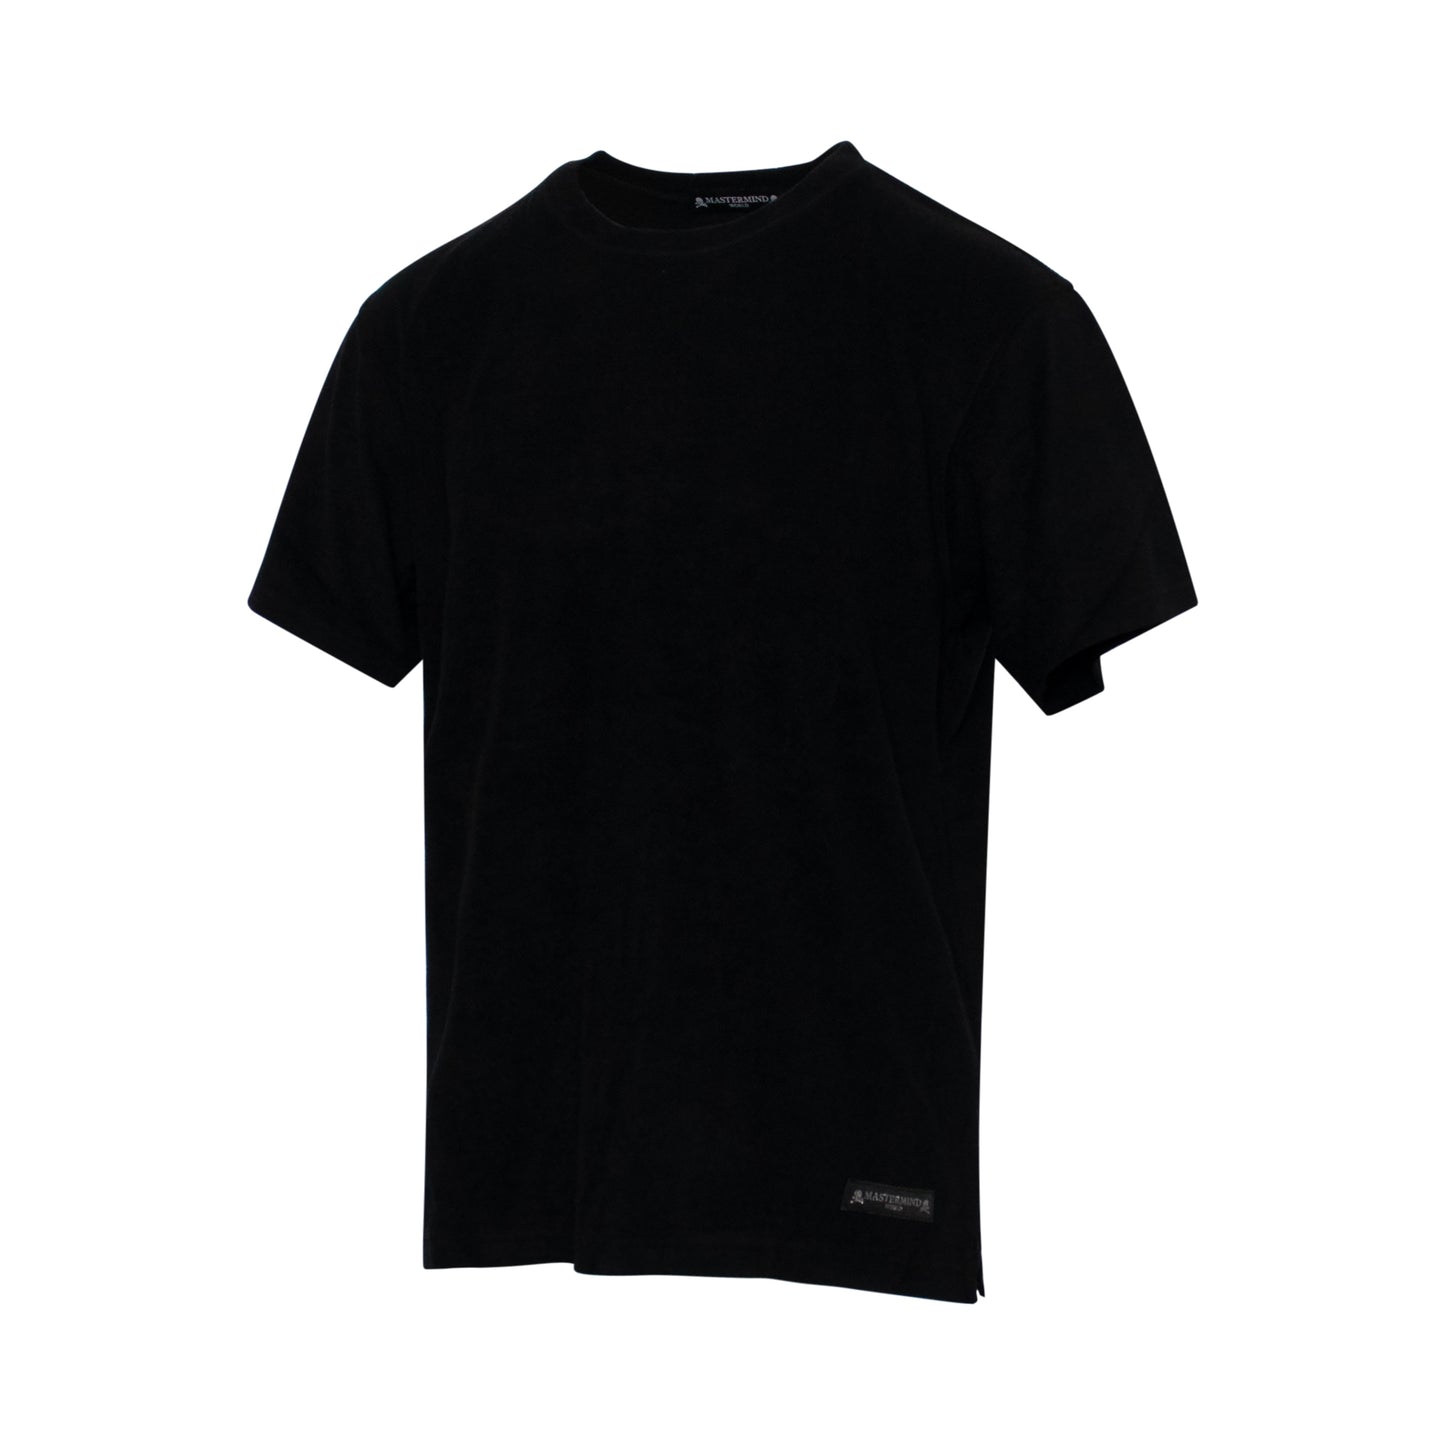 Mastermind World T-Shirt in Black